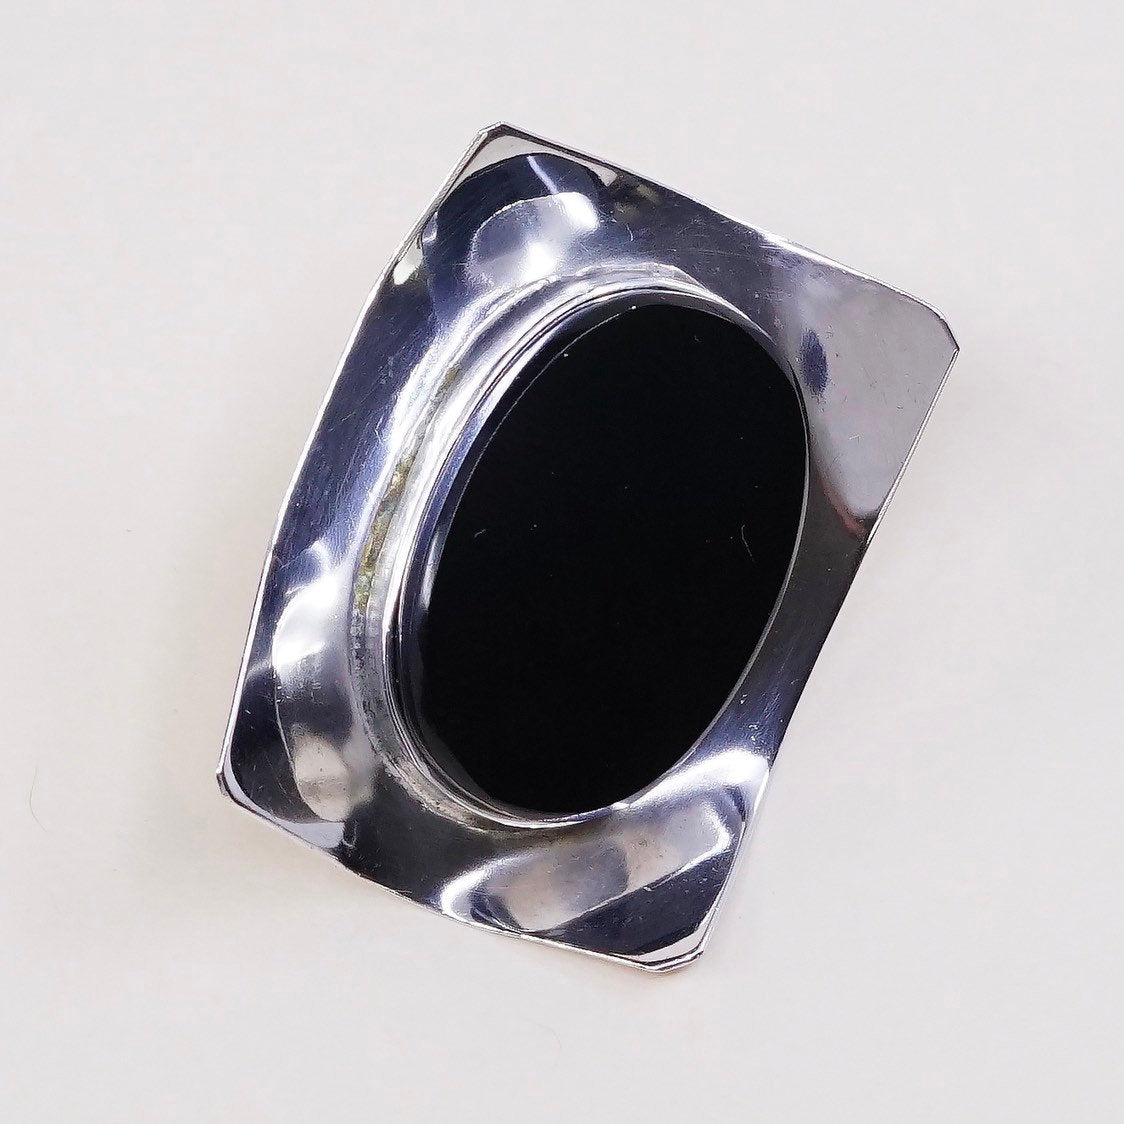 vtg Sterling silver earrings, southwestern mexico 925 studs w/ oval obsidian